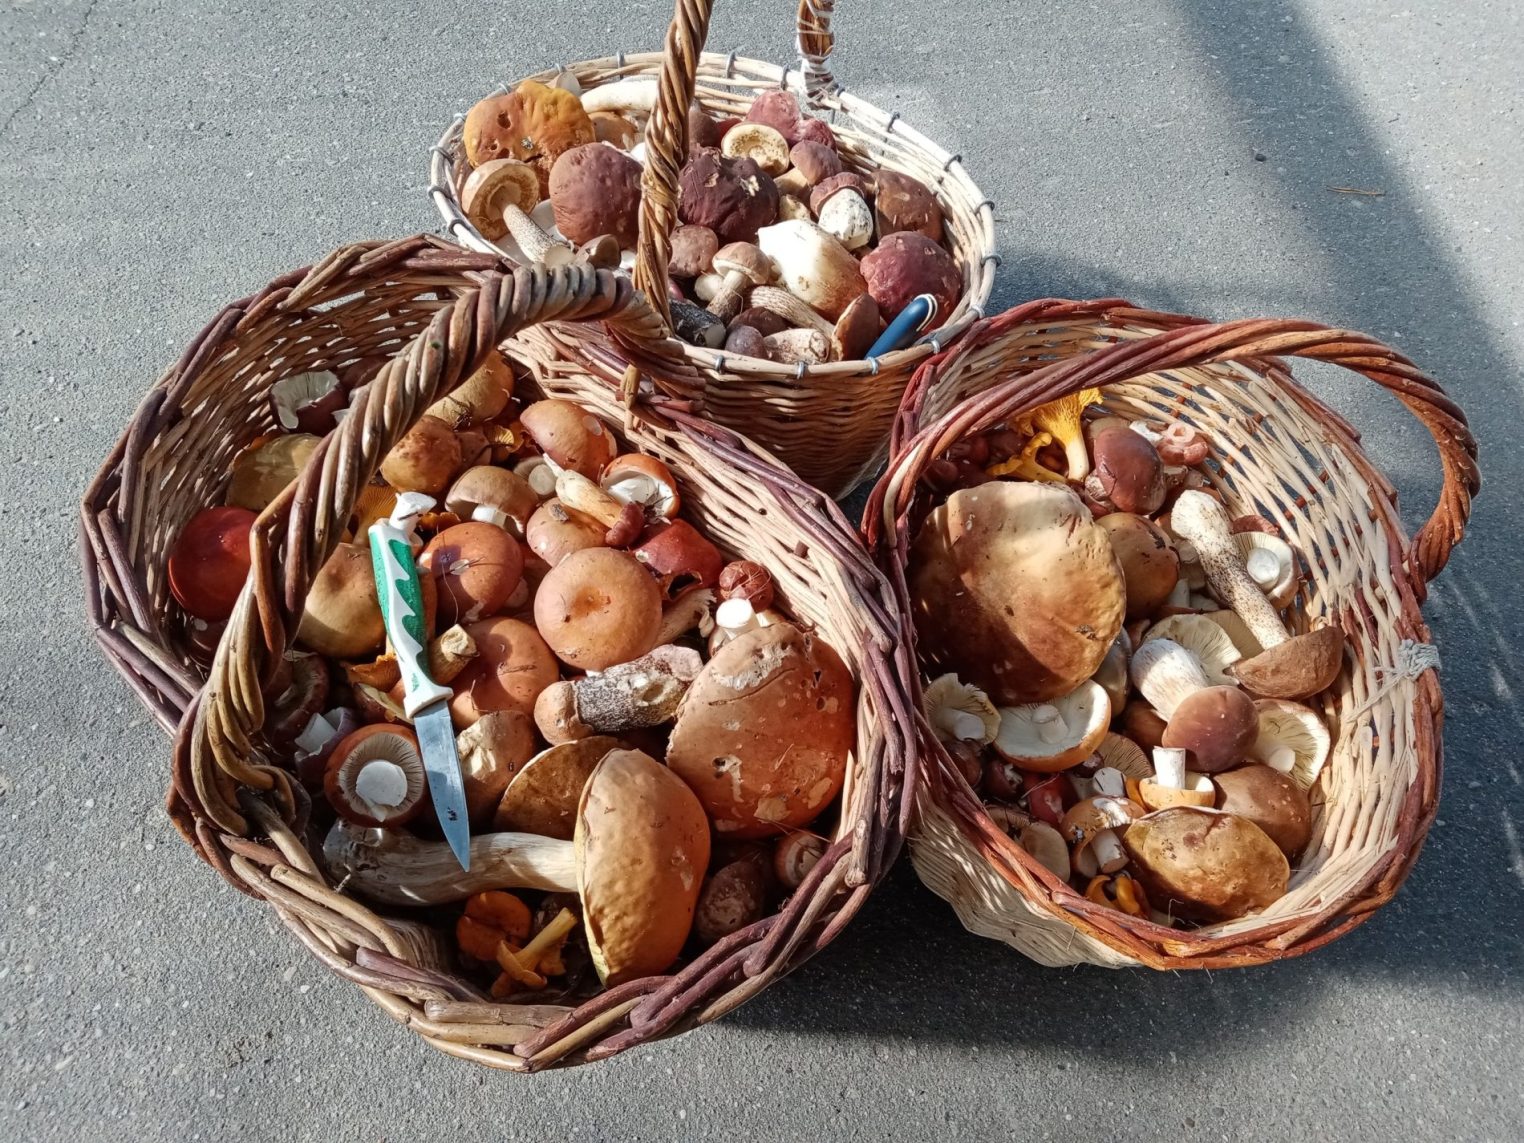 Найти Царь-гриб в костромских лесах помогает цыганская магия